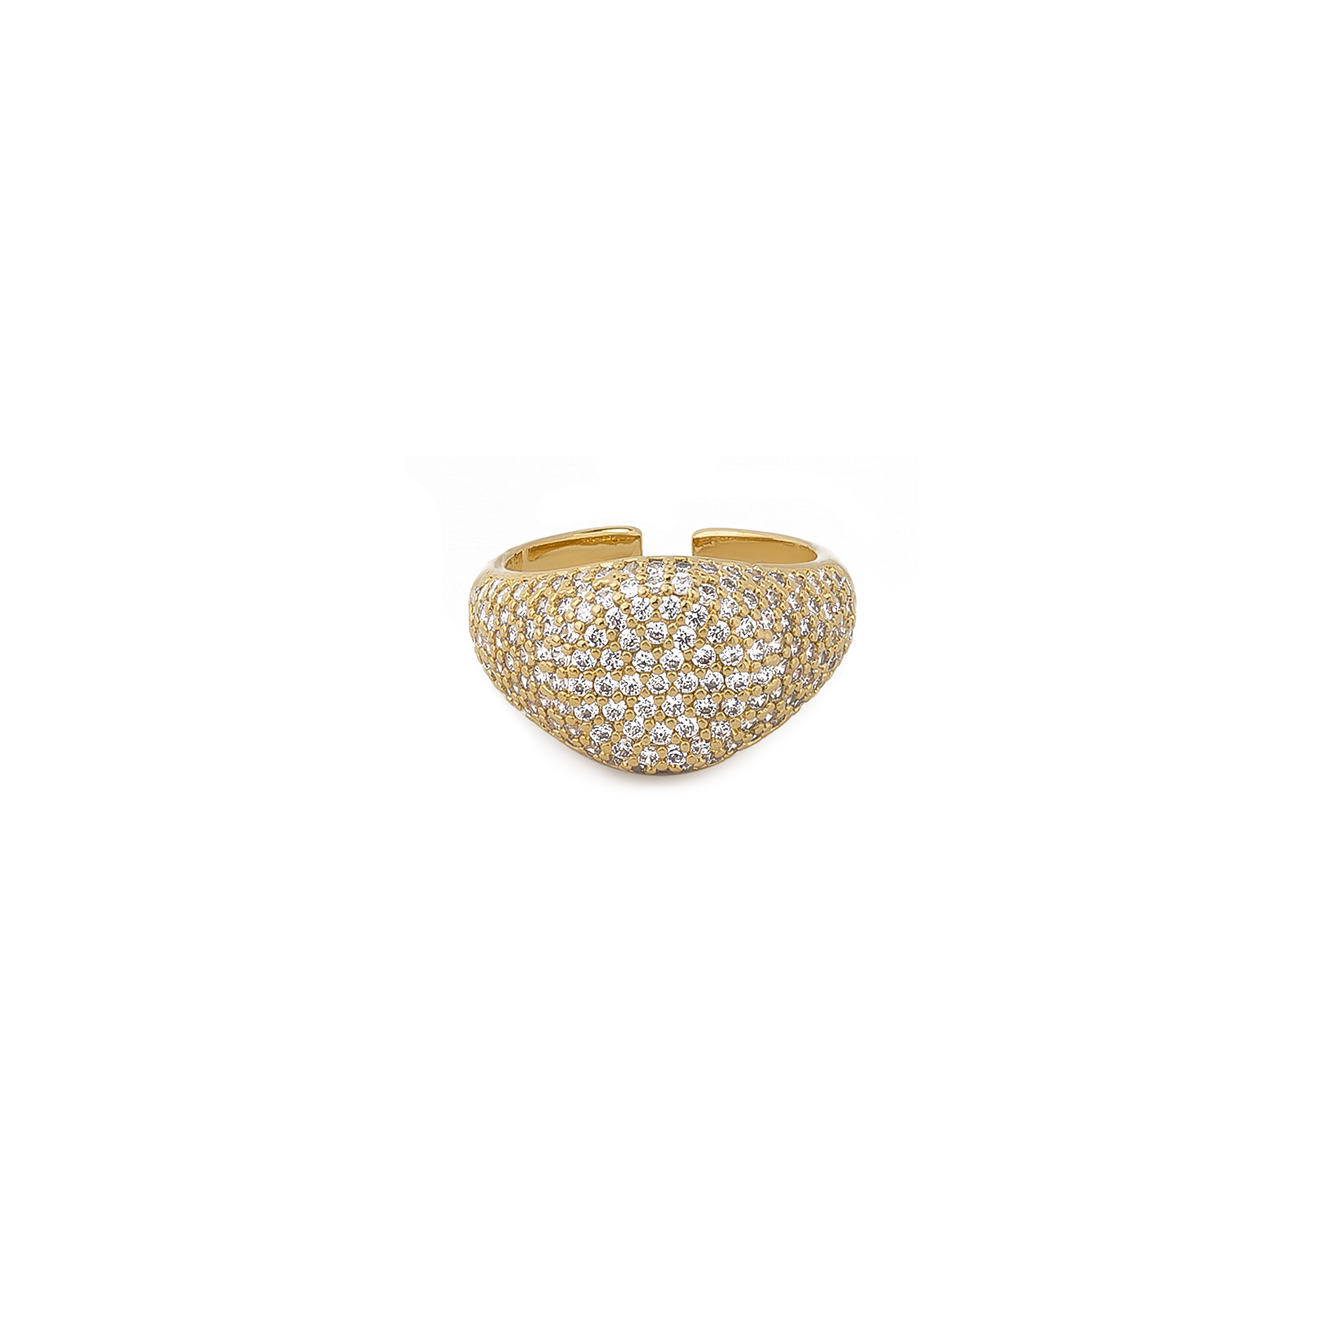 Herald Percy Золотистое кольцо-печатка с кристаллами